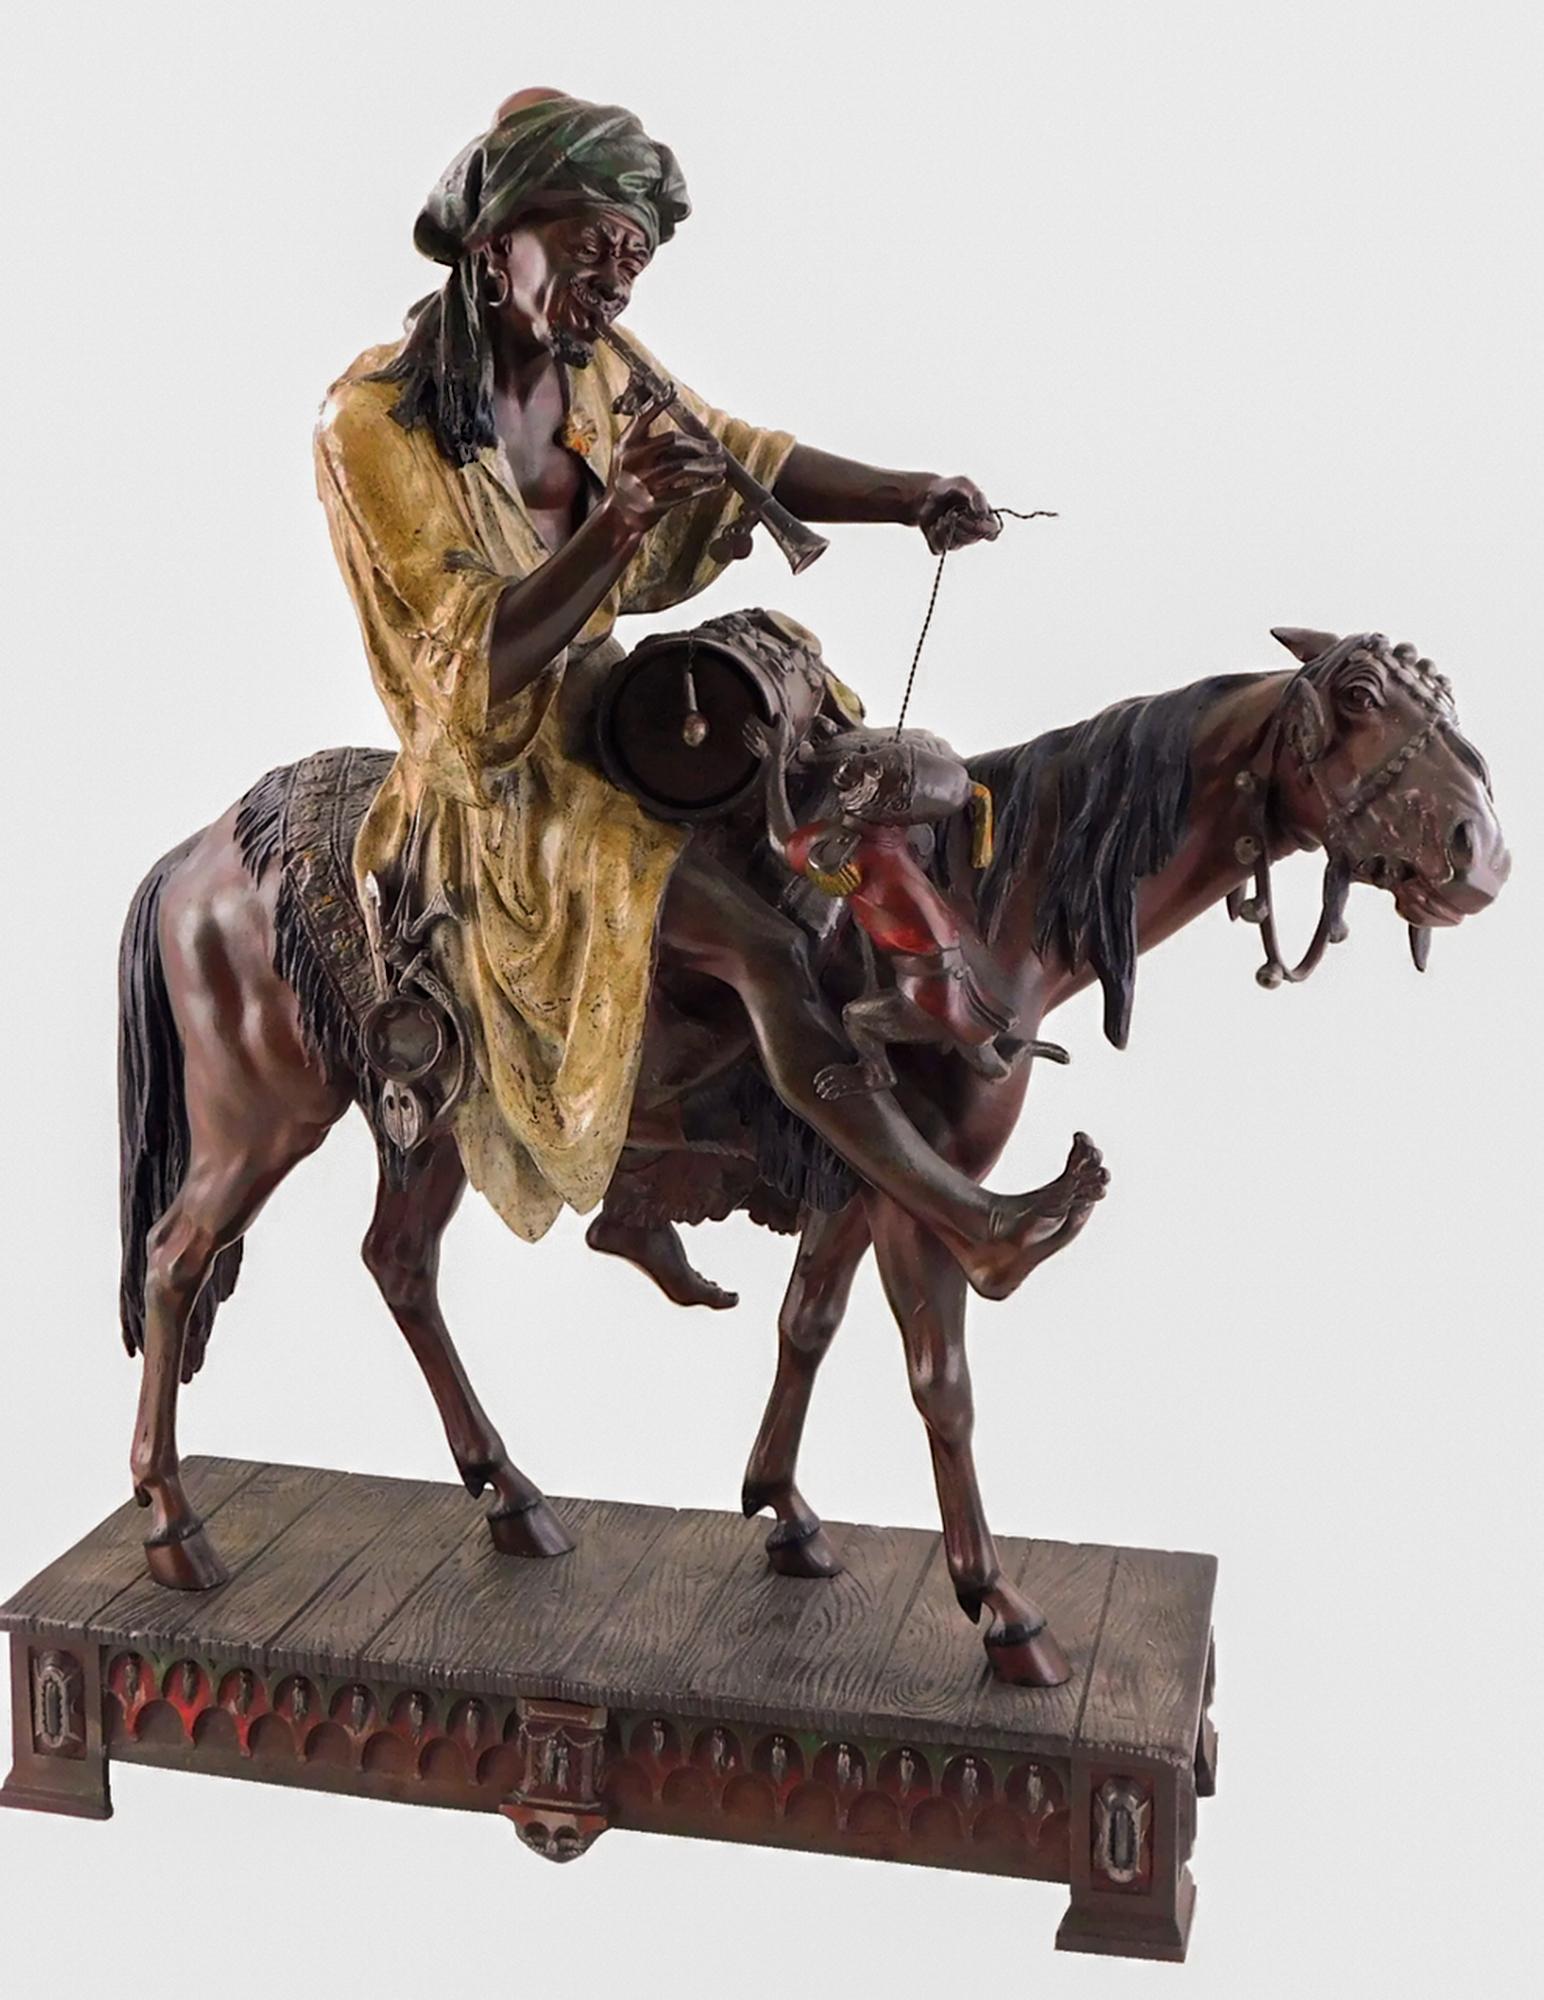 Der Nomadische Virtuose", eine fesselnde, bemalte Metallskulptur von Arthur Waagen, ist eine klangvolle Mischung aus Bewegung und Musik. Dieses Kunstwerk aus dem späten 19. Jahrhundert zeigt eine lebhafte Szene eines reisenden arabischen Musikers,